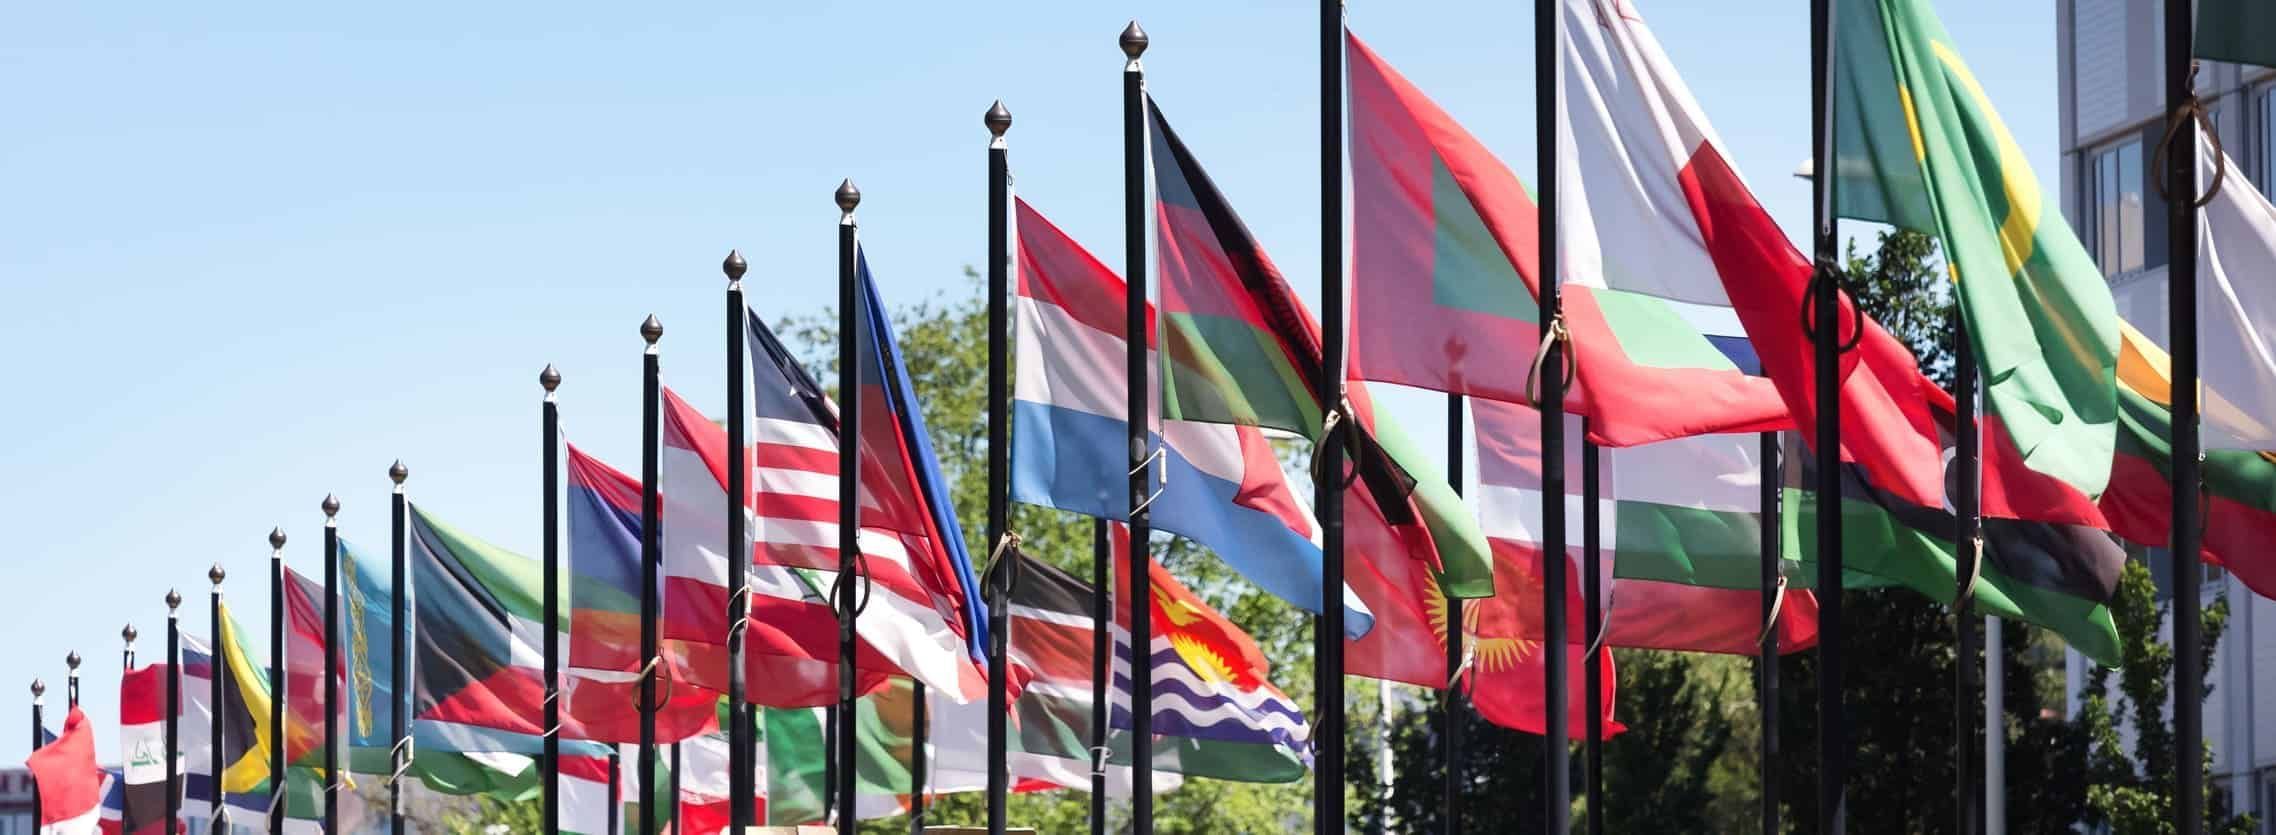 Quantas bandeiras você conhece? #quiz #bandeiras #paises #foryou